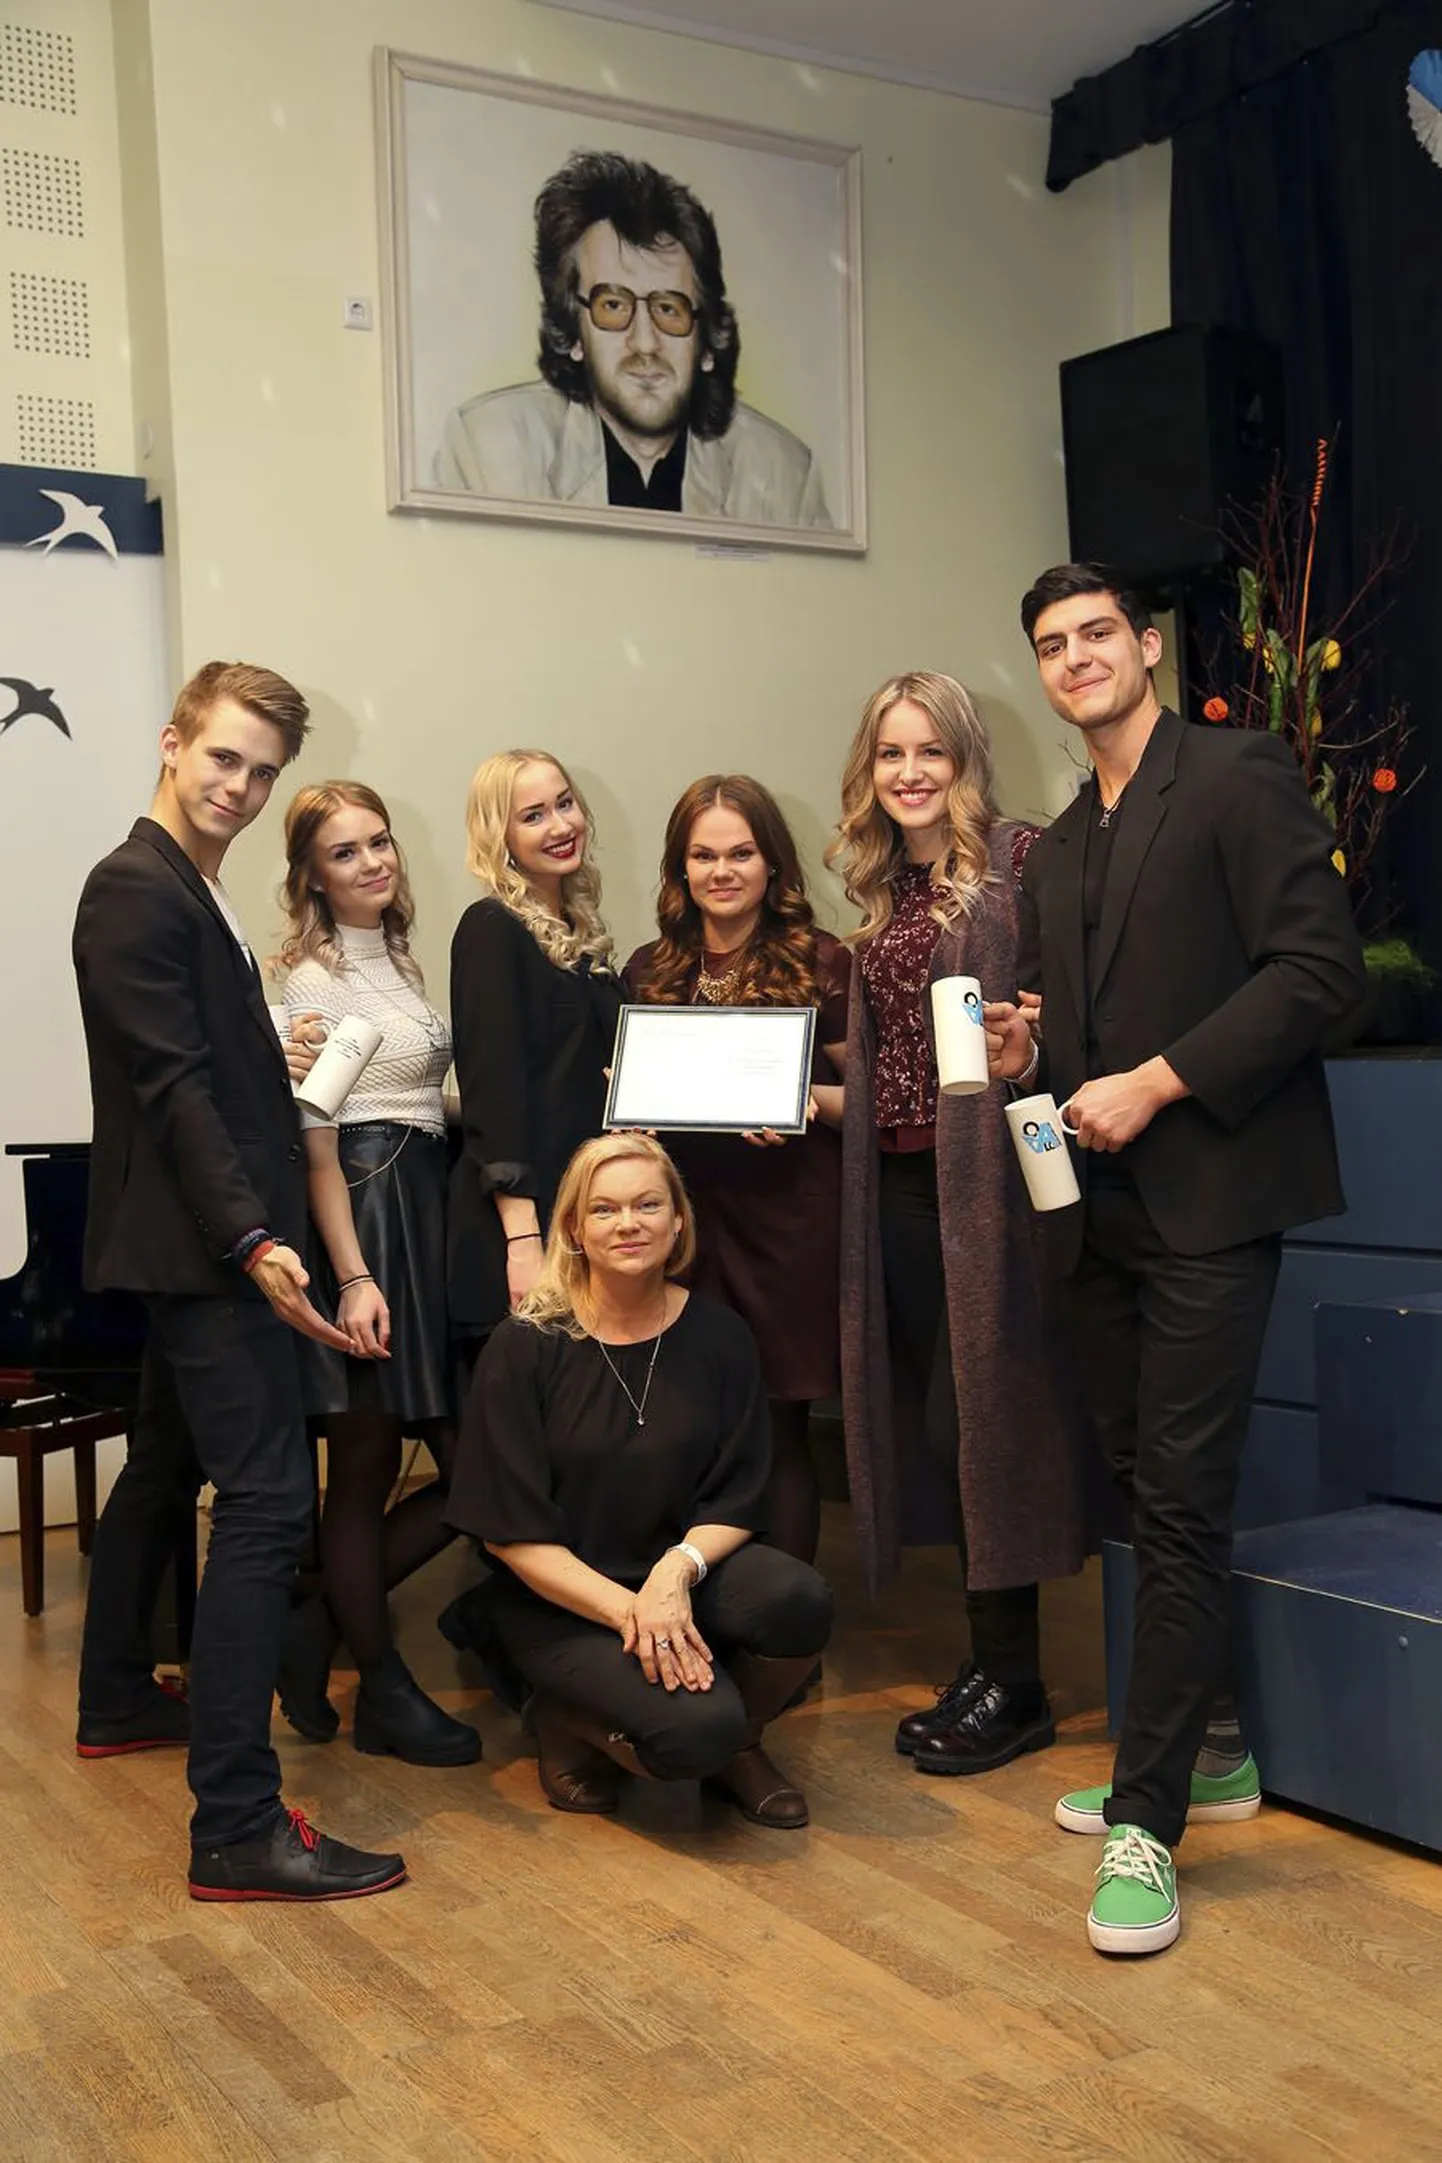 Viljandi muusikakooli õpilased esinesid edukalt Jõgeval Alo Mattiiseni mälestuseks korraldatud vokaalansamblite konkursil.